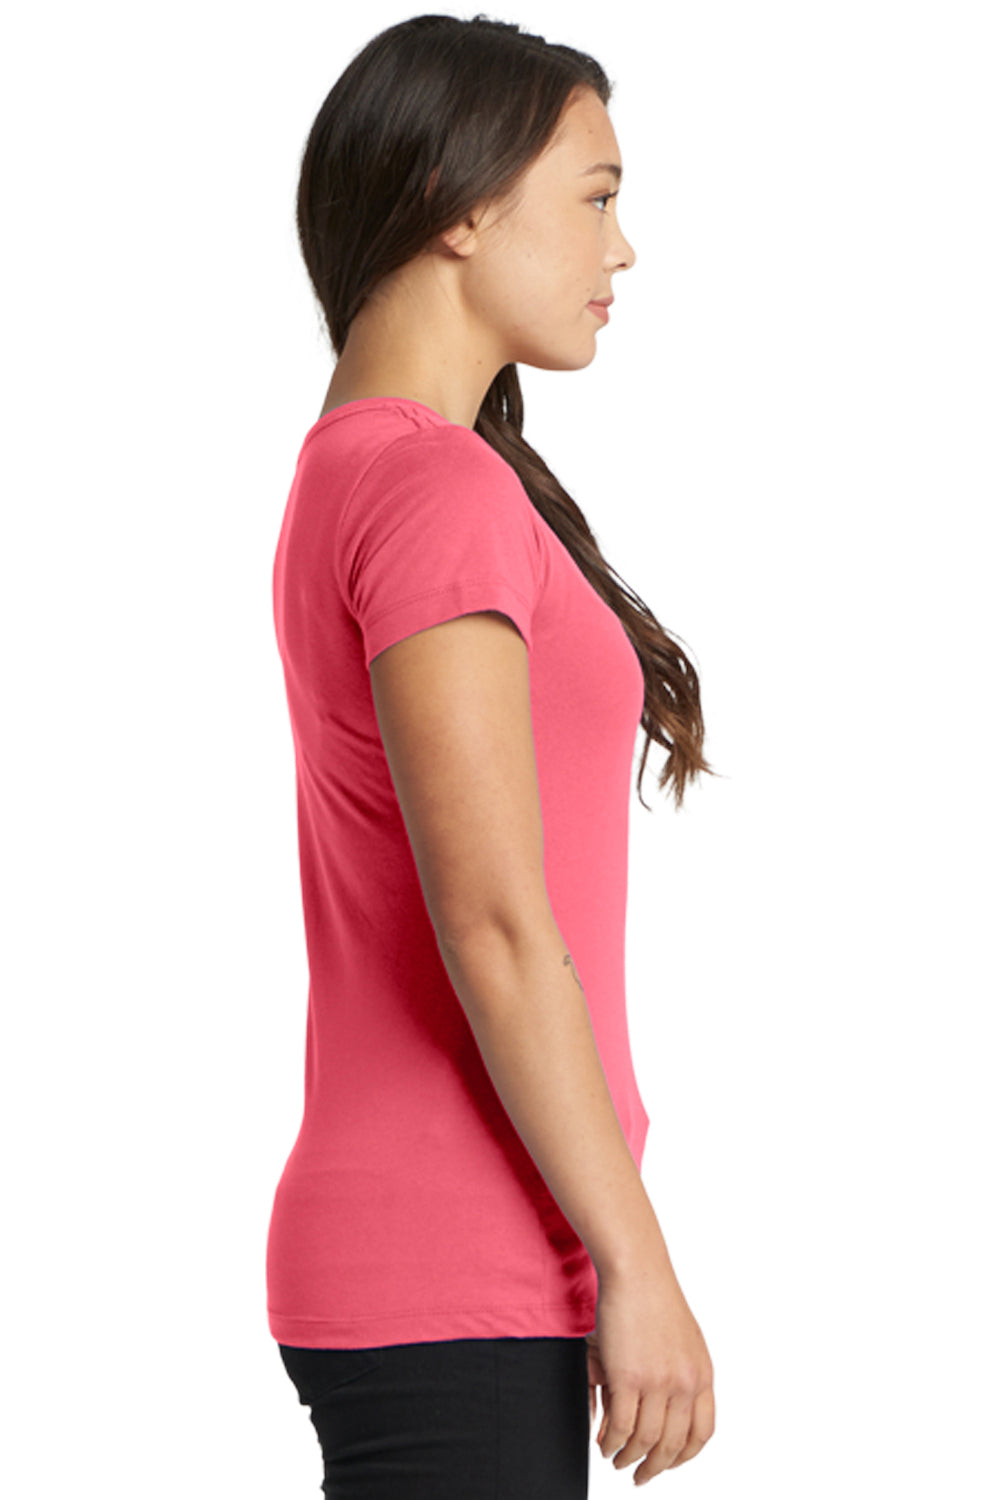 Next Level N1510 Womens Ideal Jersey Short Sleeve Crewneck T-Shirt Hot Pink Side